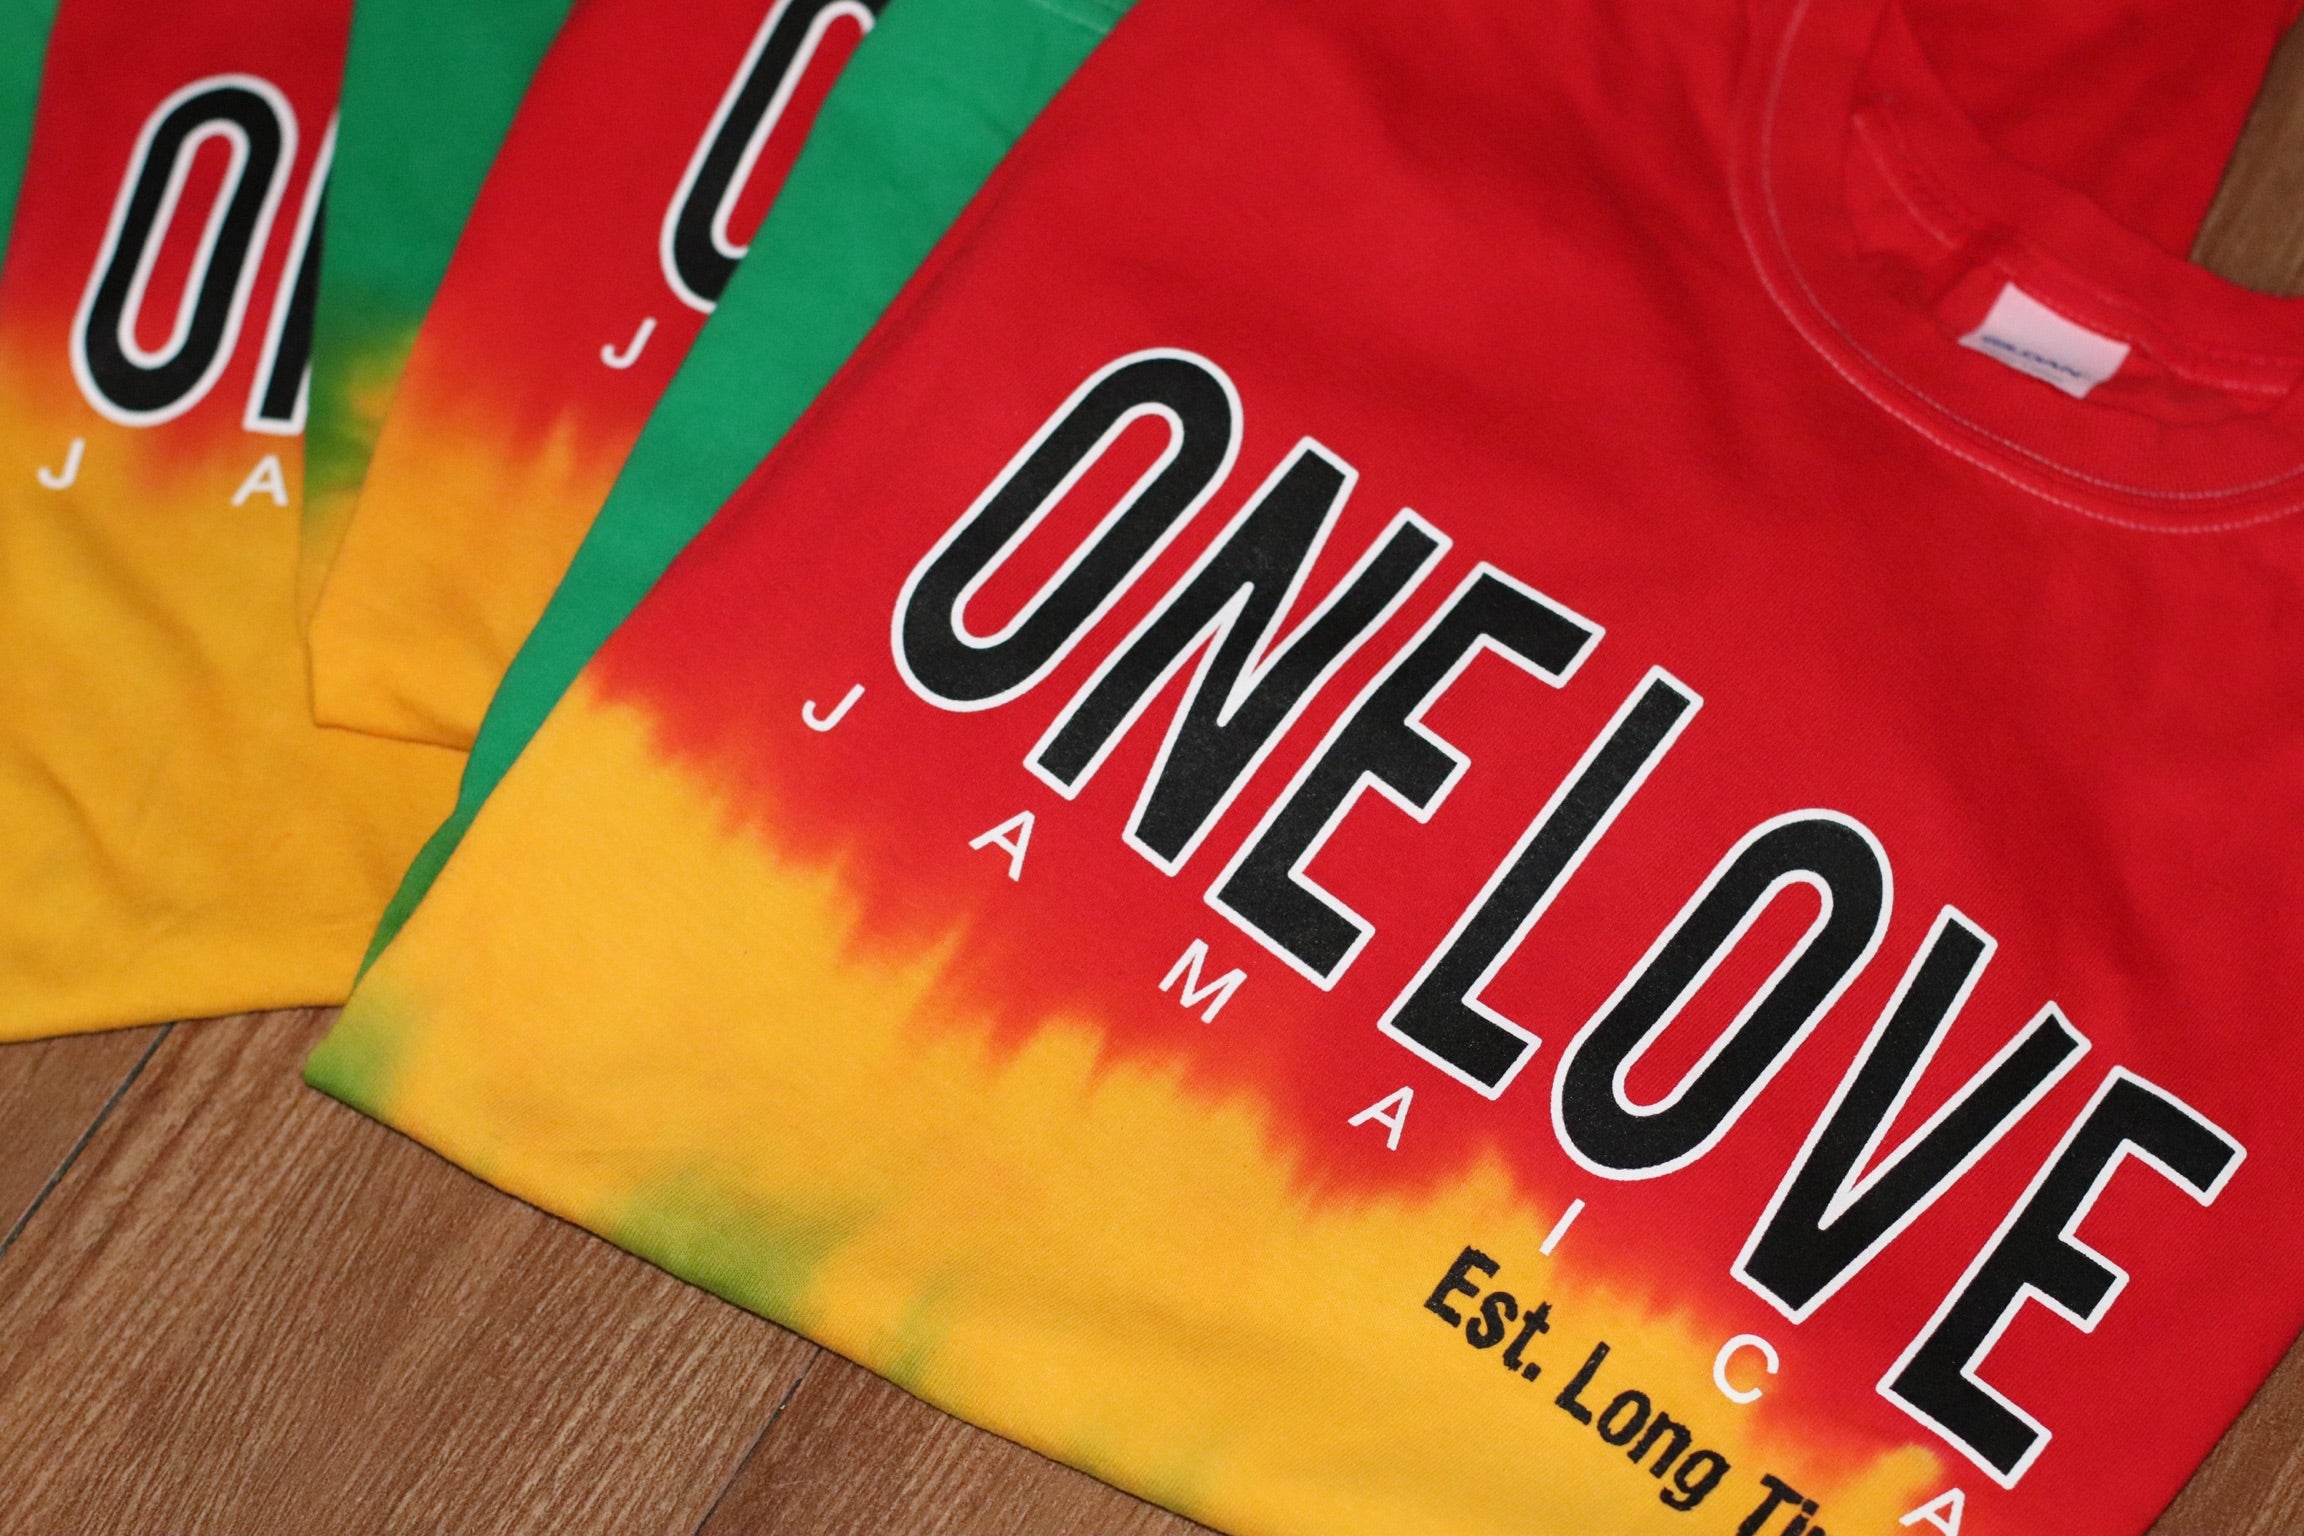 One Love Reggae Dip Tie-Dye